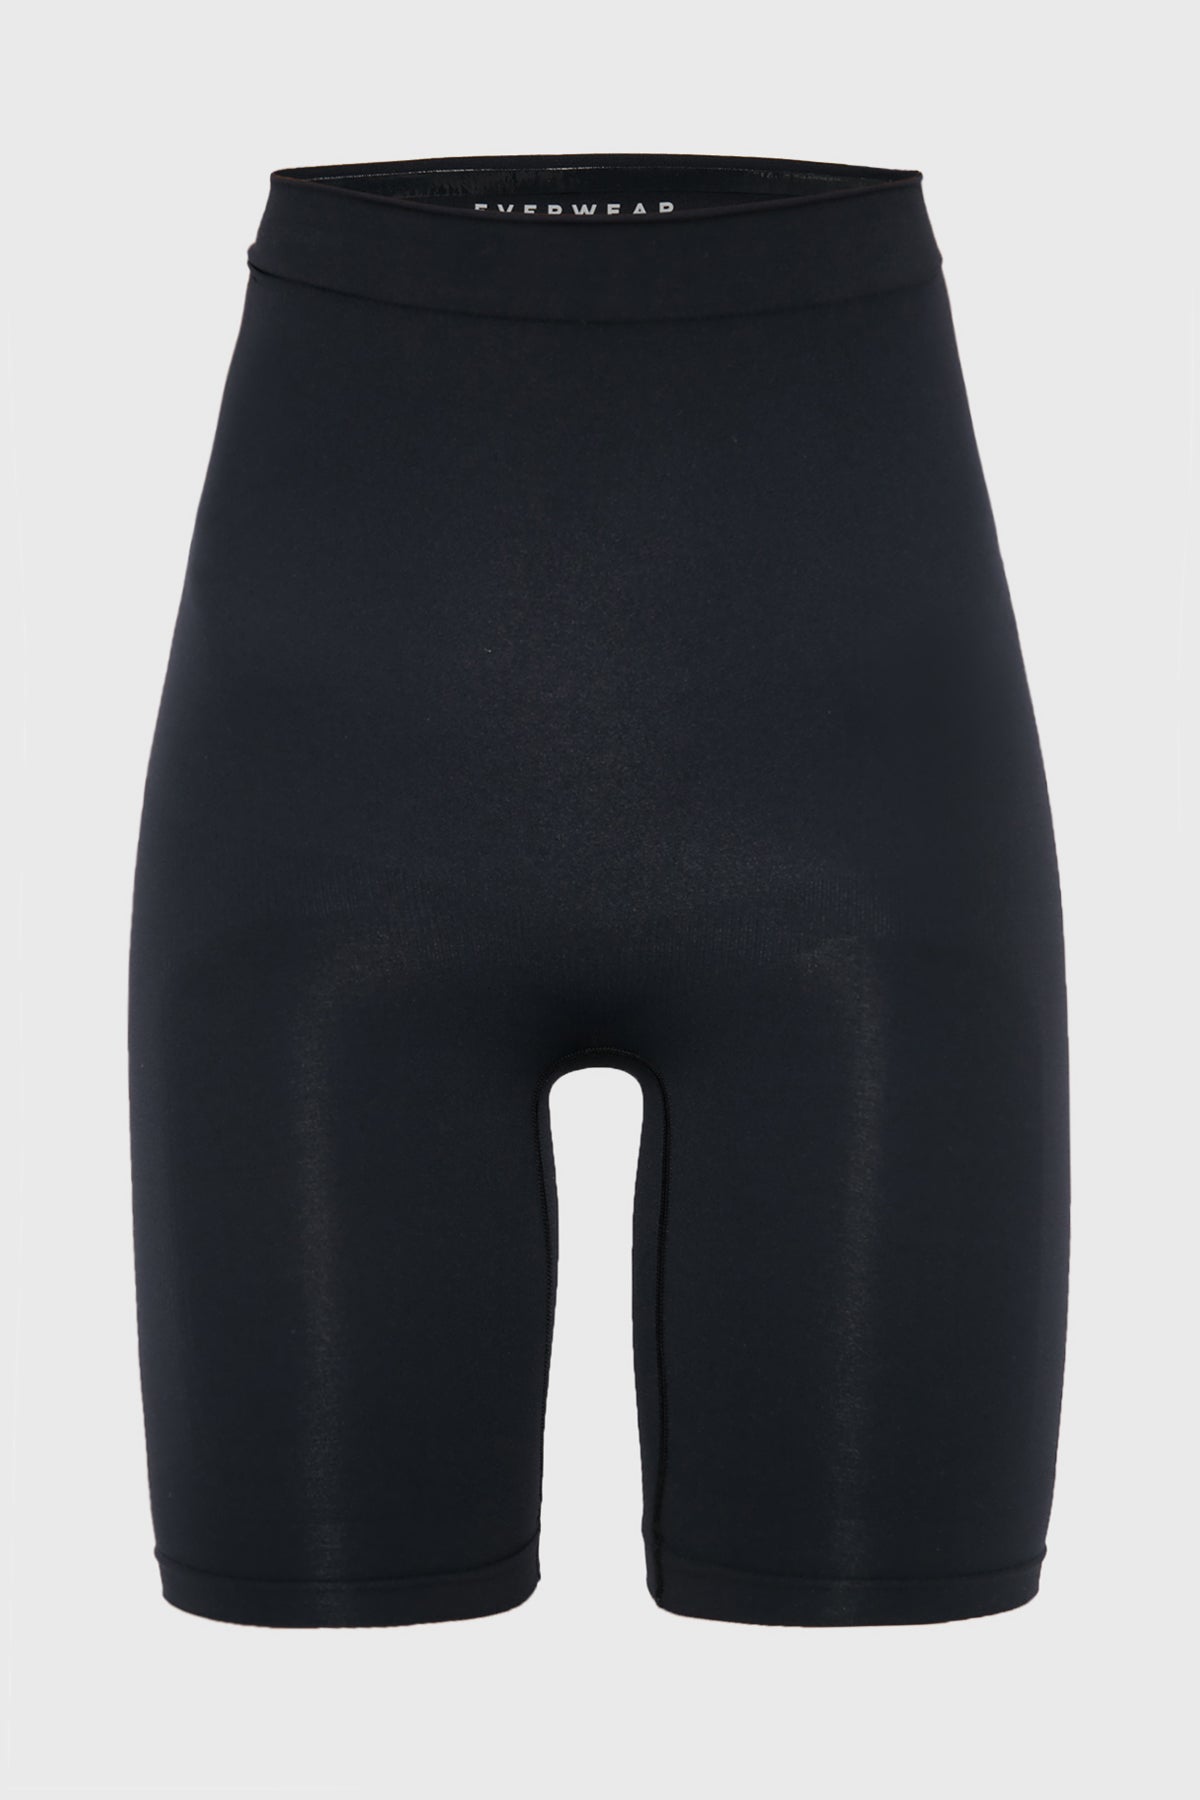 Better Shape | High Waist Thigh Shaper in Black